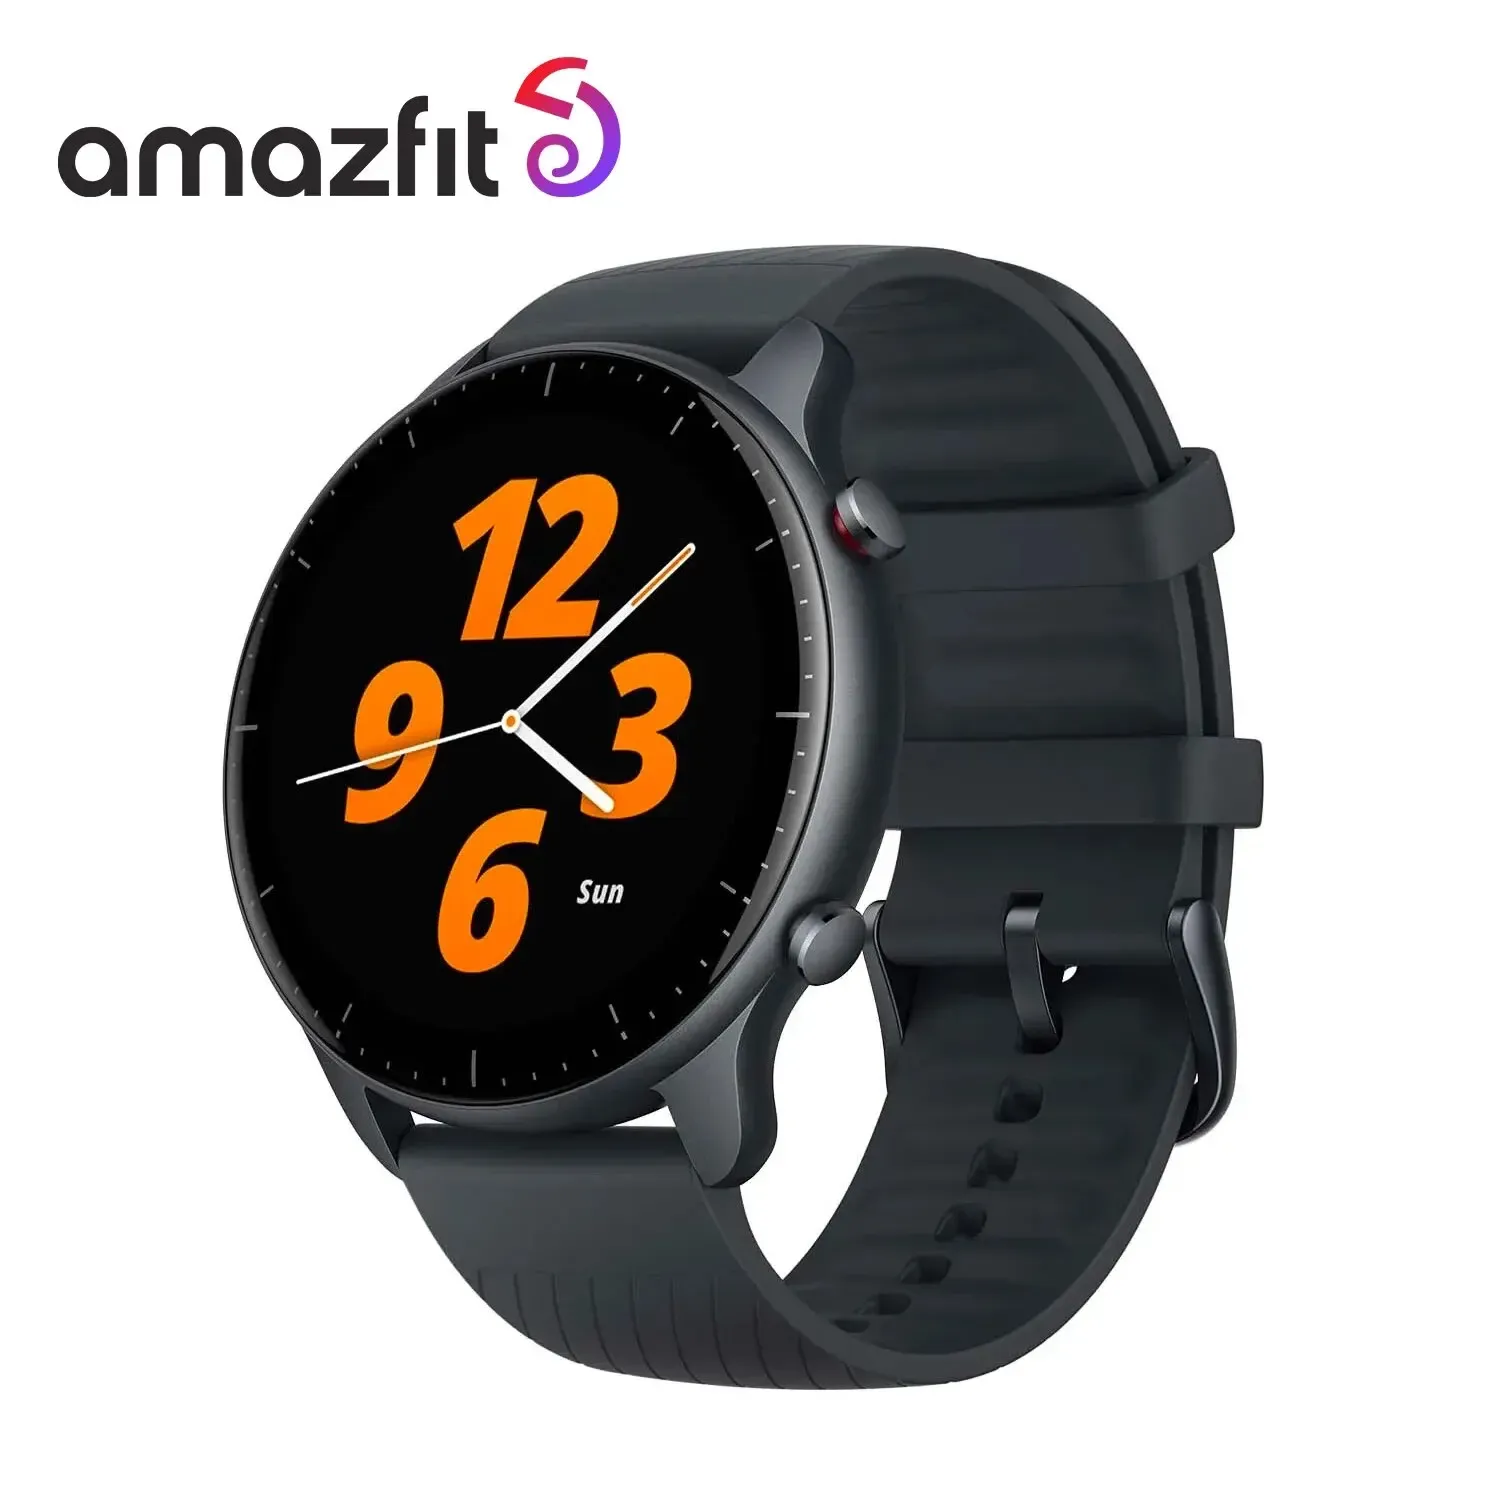 Smartwatch Amazfit Gtr 2 New